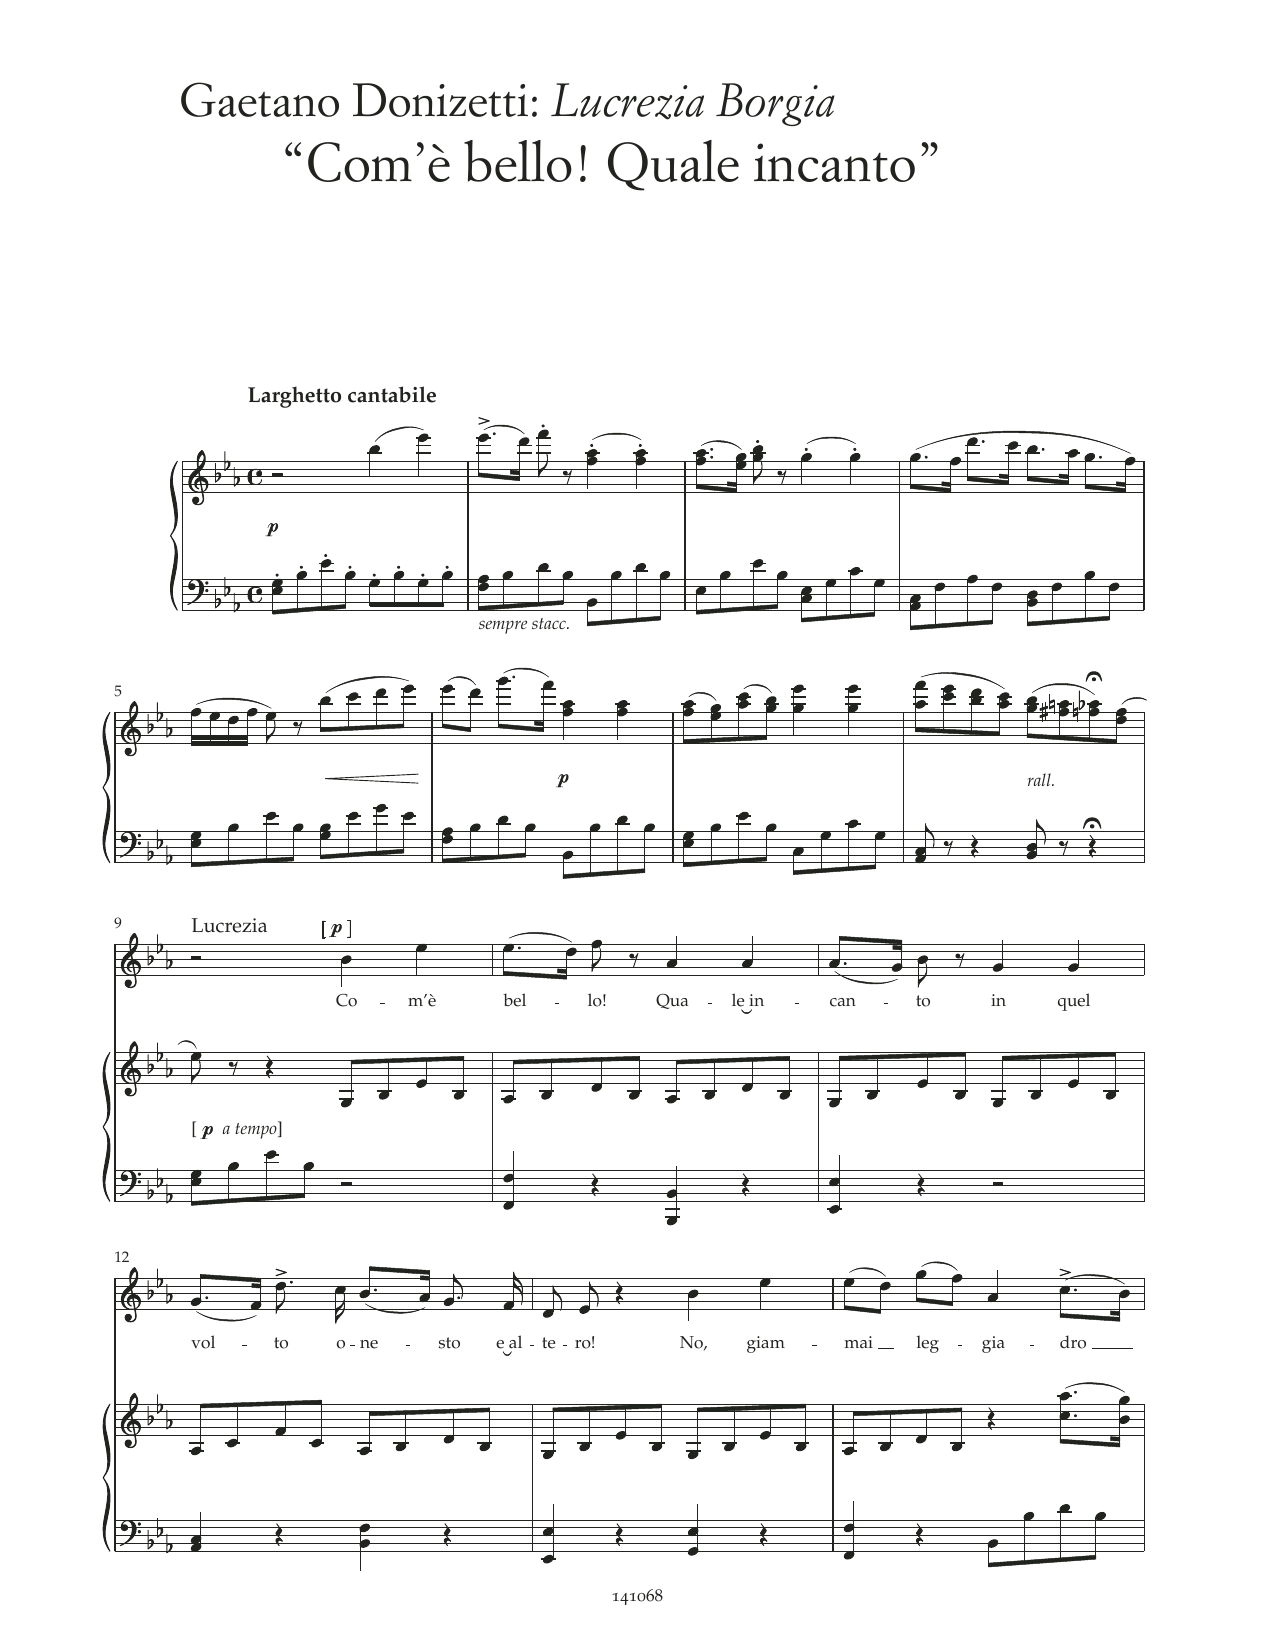 Gaetano Donizetti Com'è bello! Quale incanto (arr. Lucrezia Borgia) sheet music notes and chords arranged for Piano & Vocal